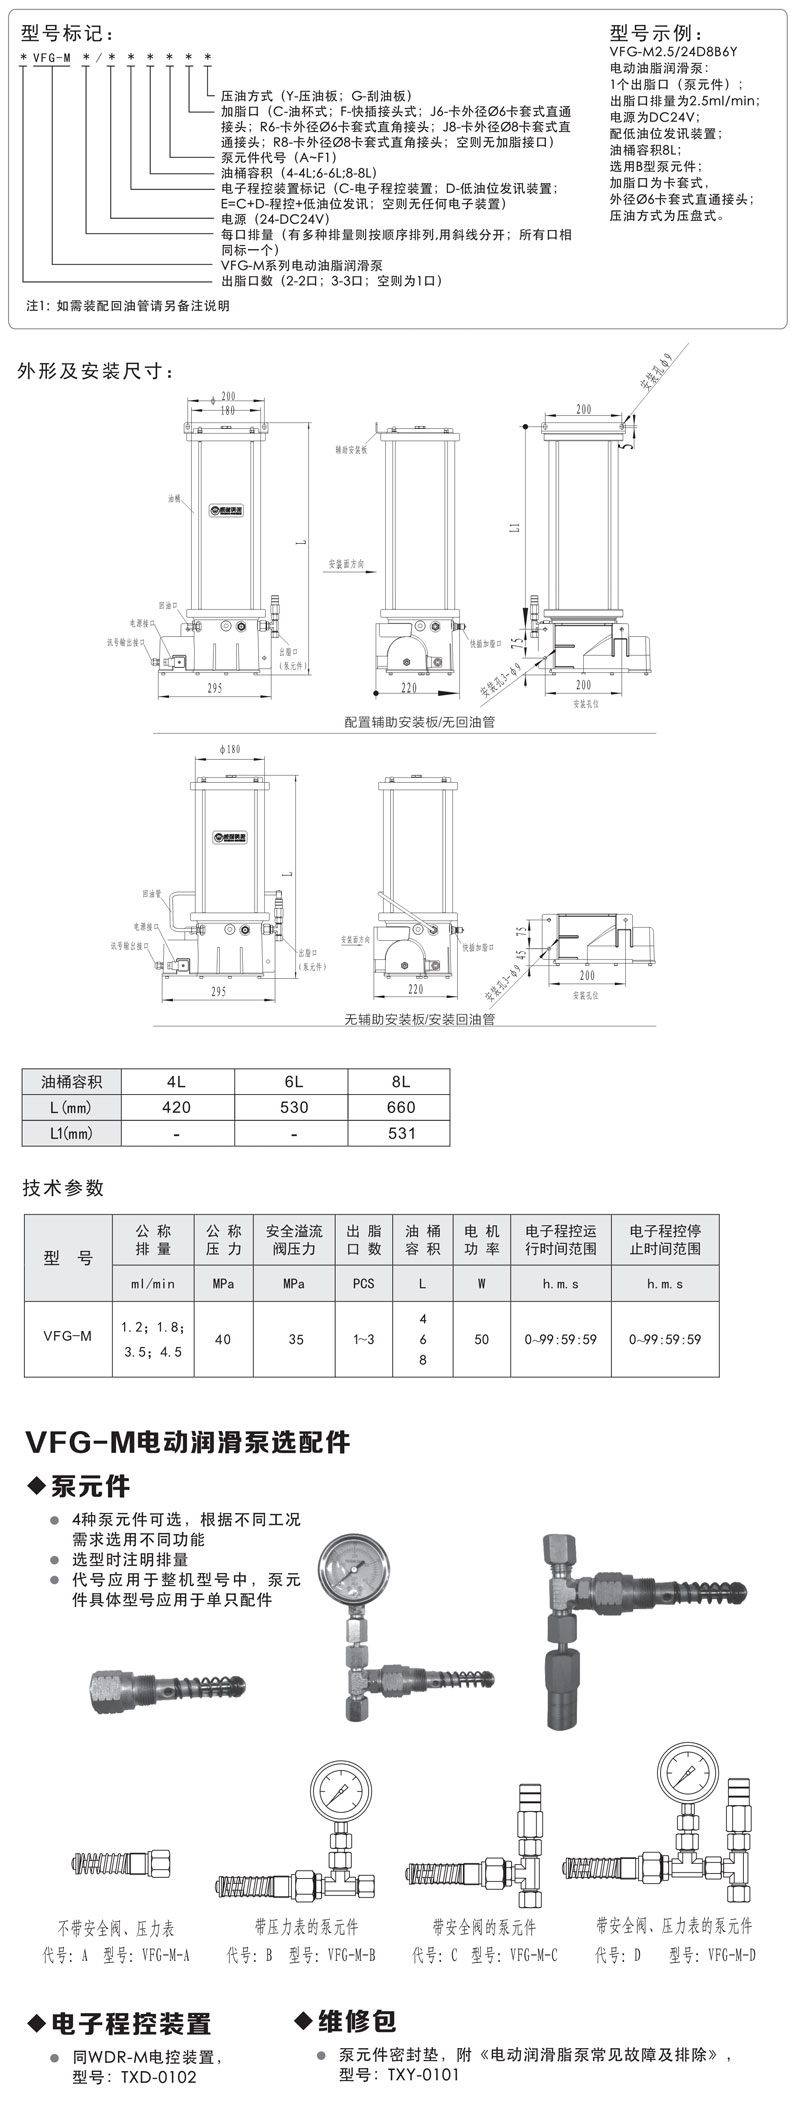 VFG-M4电动油脂润滑泵